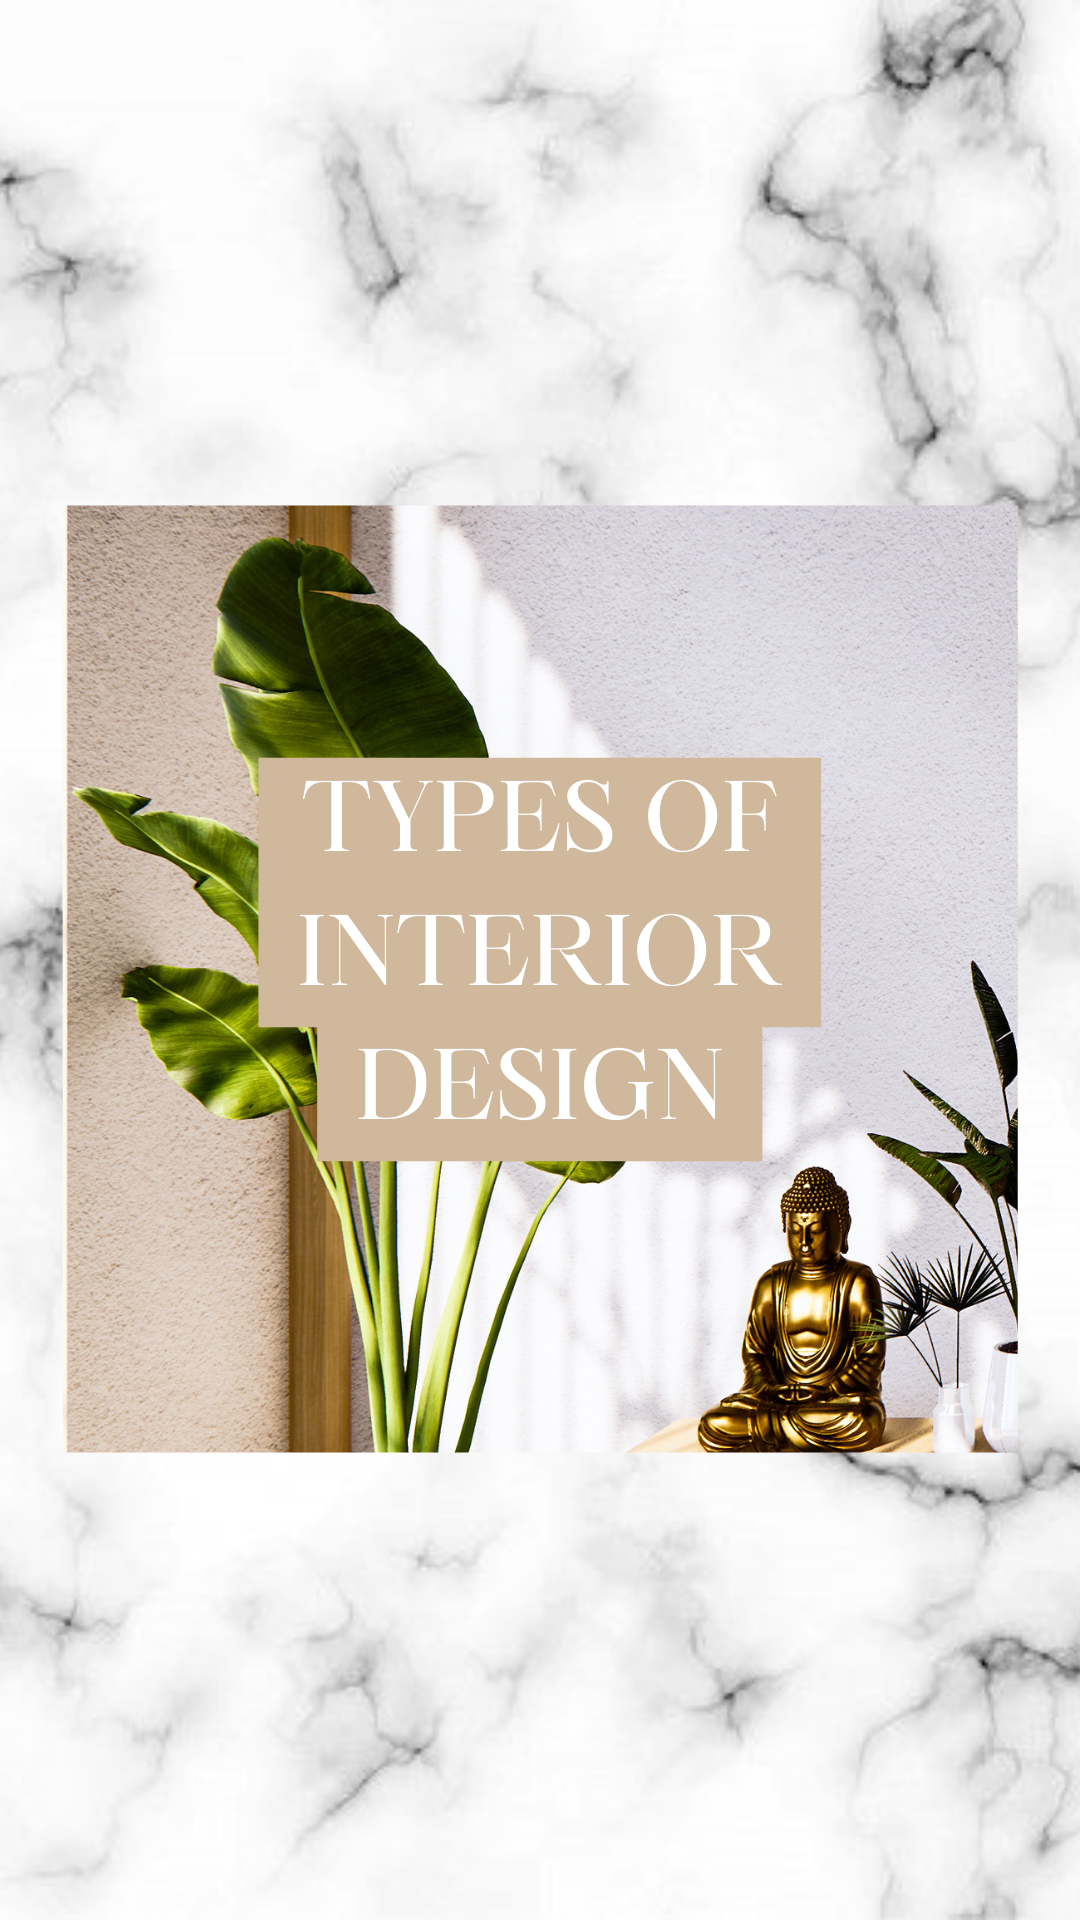 Types of interior design